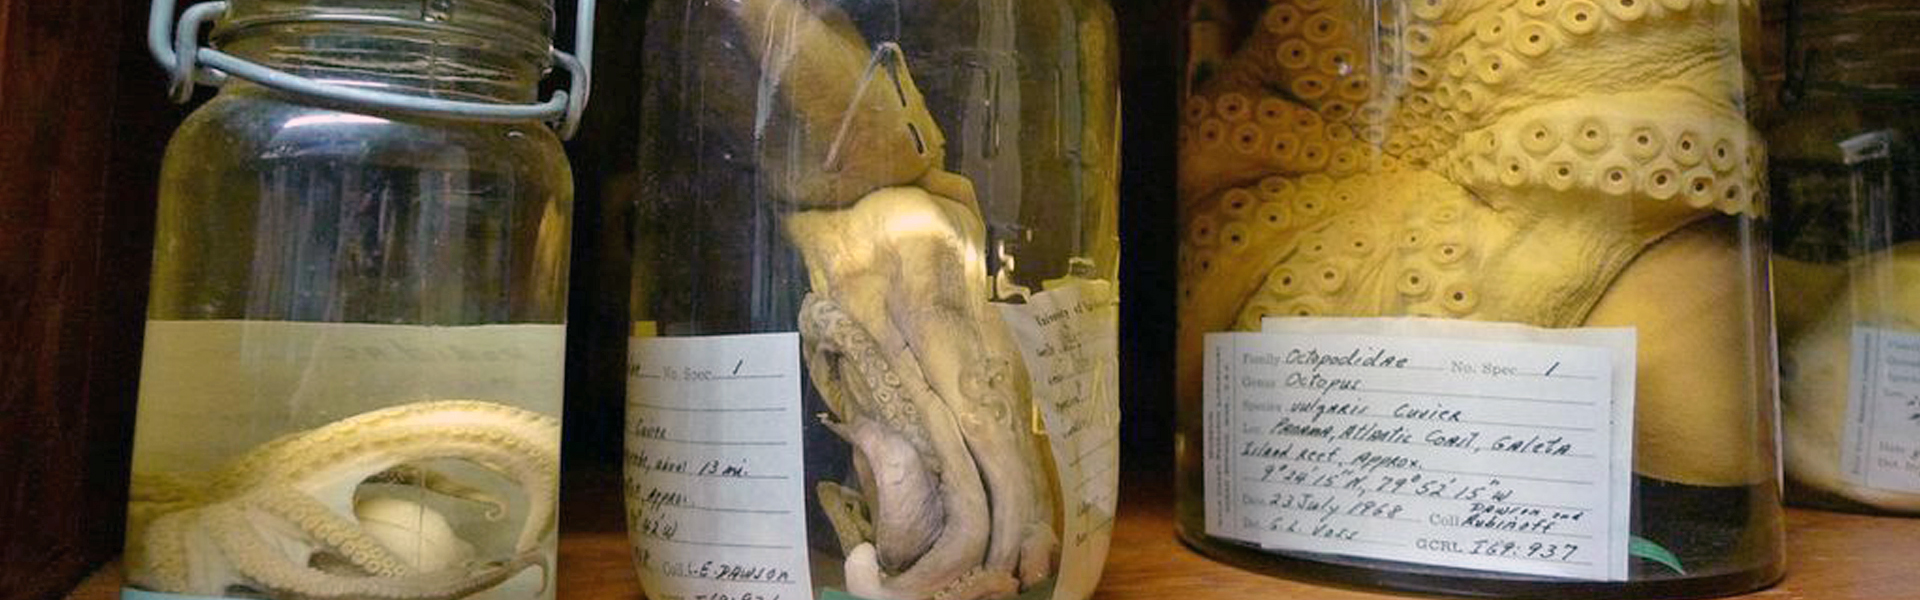 museum specimens in jar